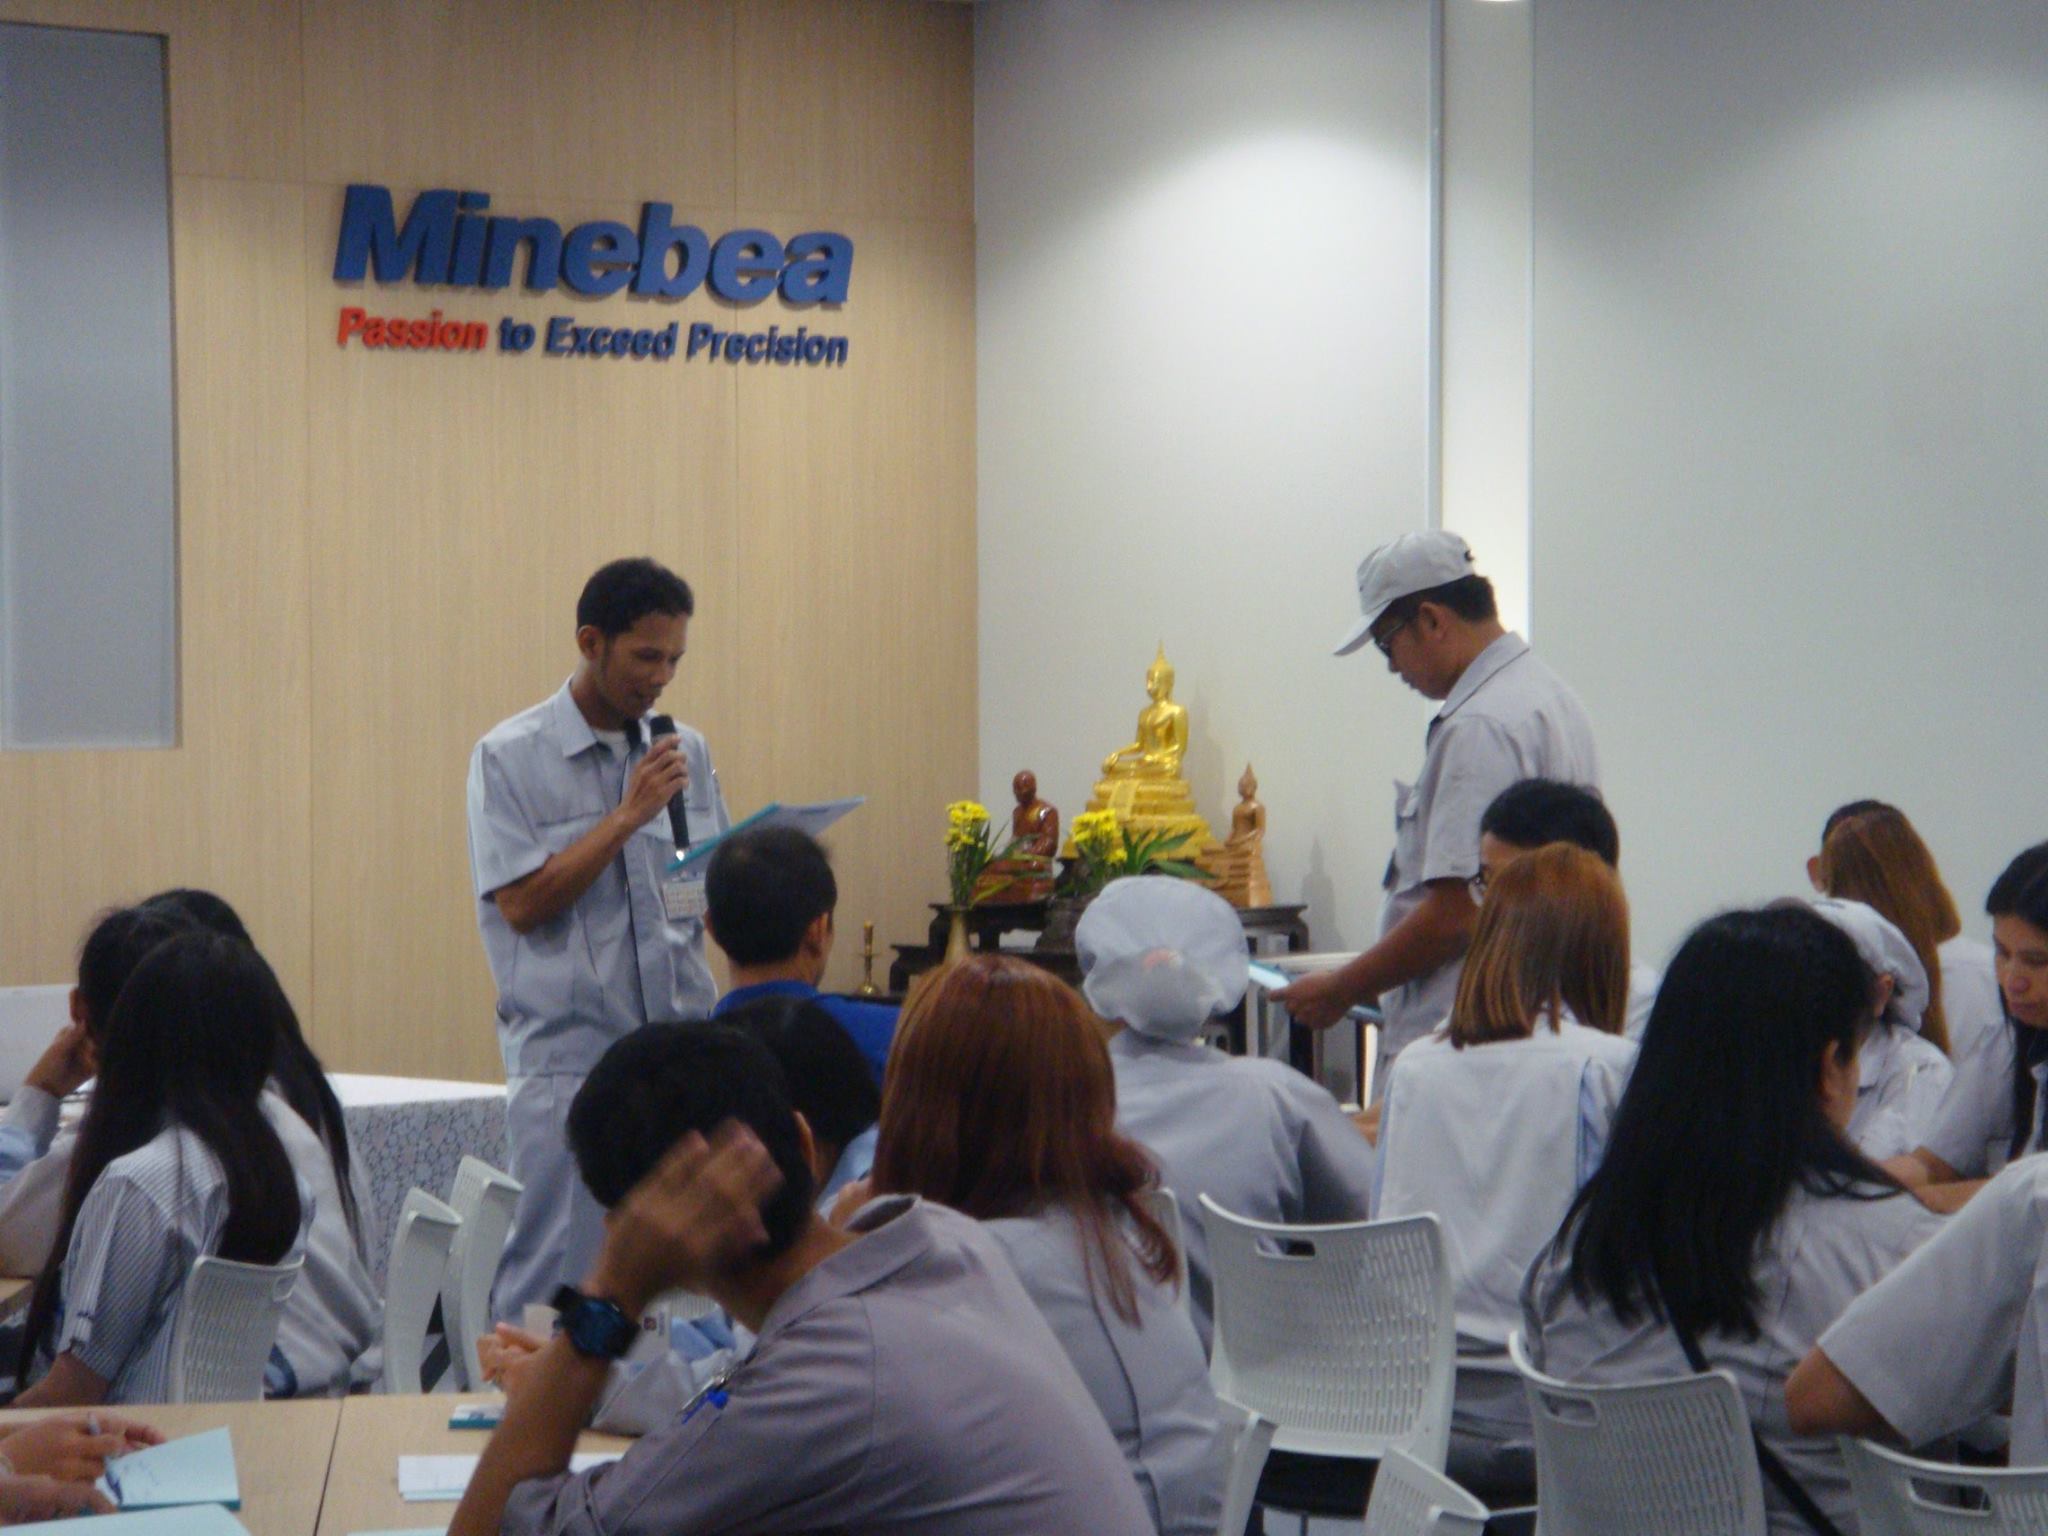 NMB-Minebea Thai : เทคนิคการบริหารจัดการการเป็นพี่เลี้ยง รุ่นที่1